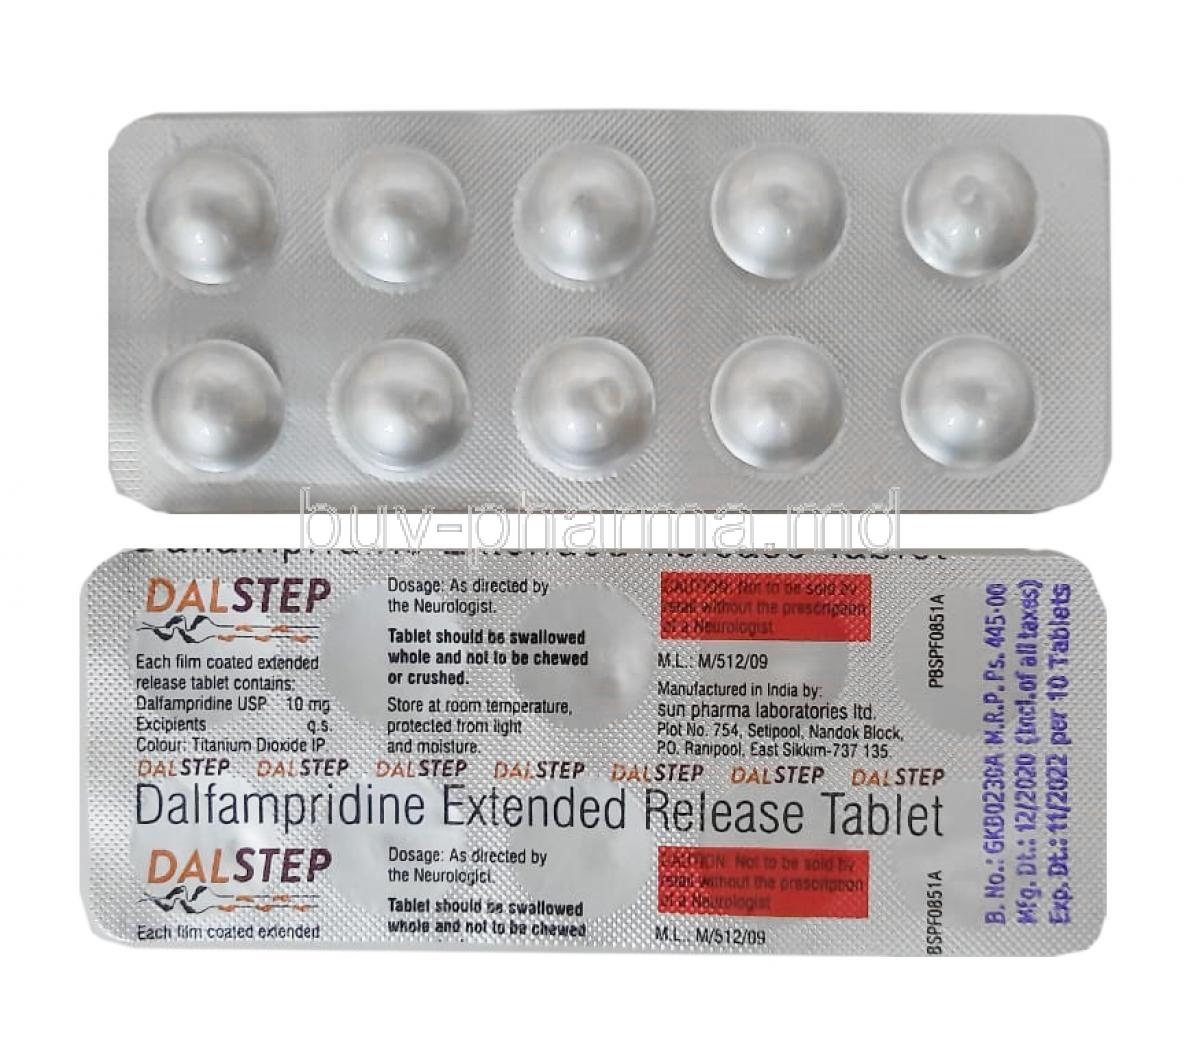 Dalstep, Dalfampridine 10mg tablet